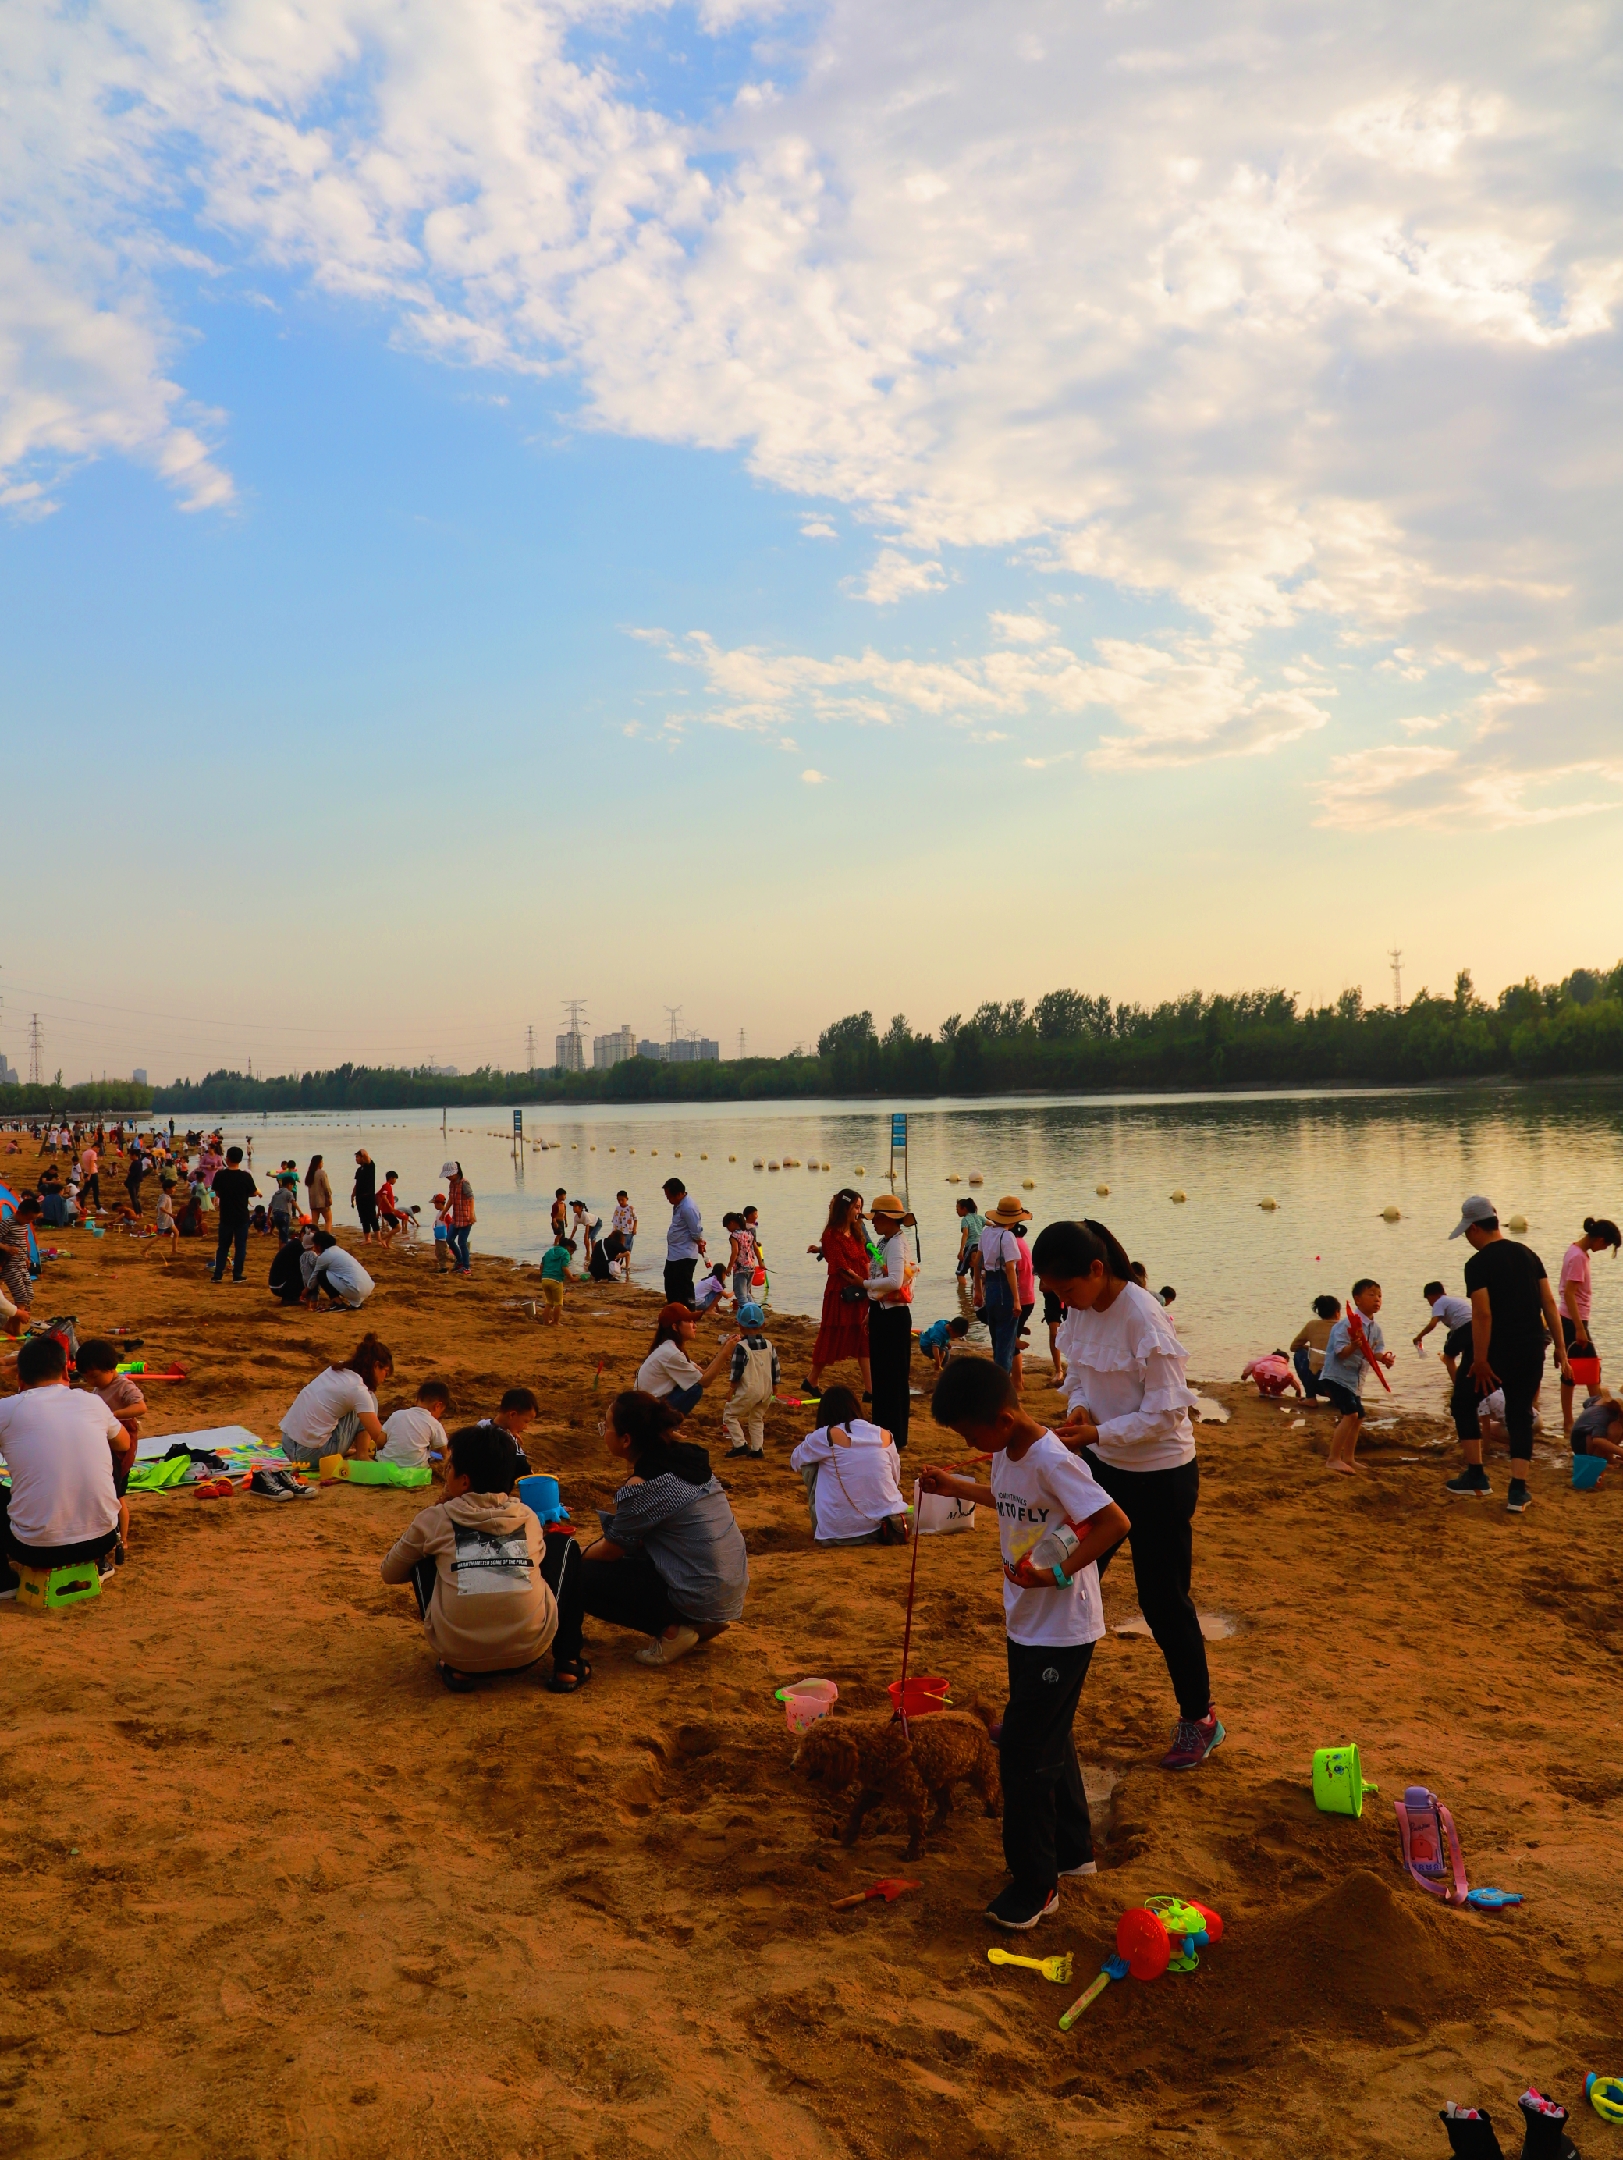 可是河南省鹤壁市淇滨区淇河金沙滩上,孩子们全然不顾,都在兴致勃勃地